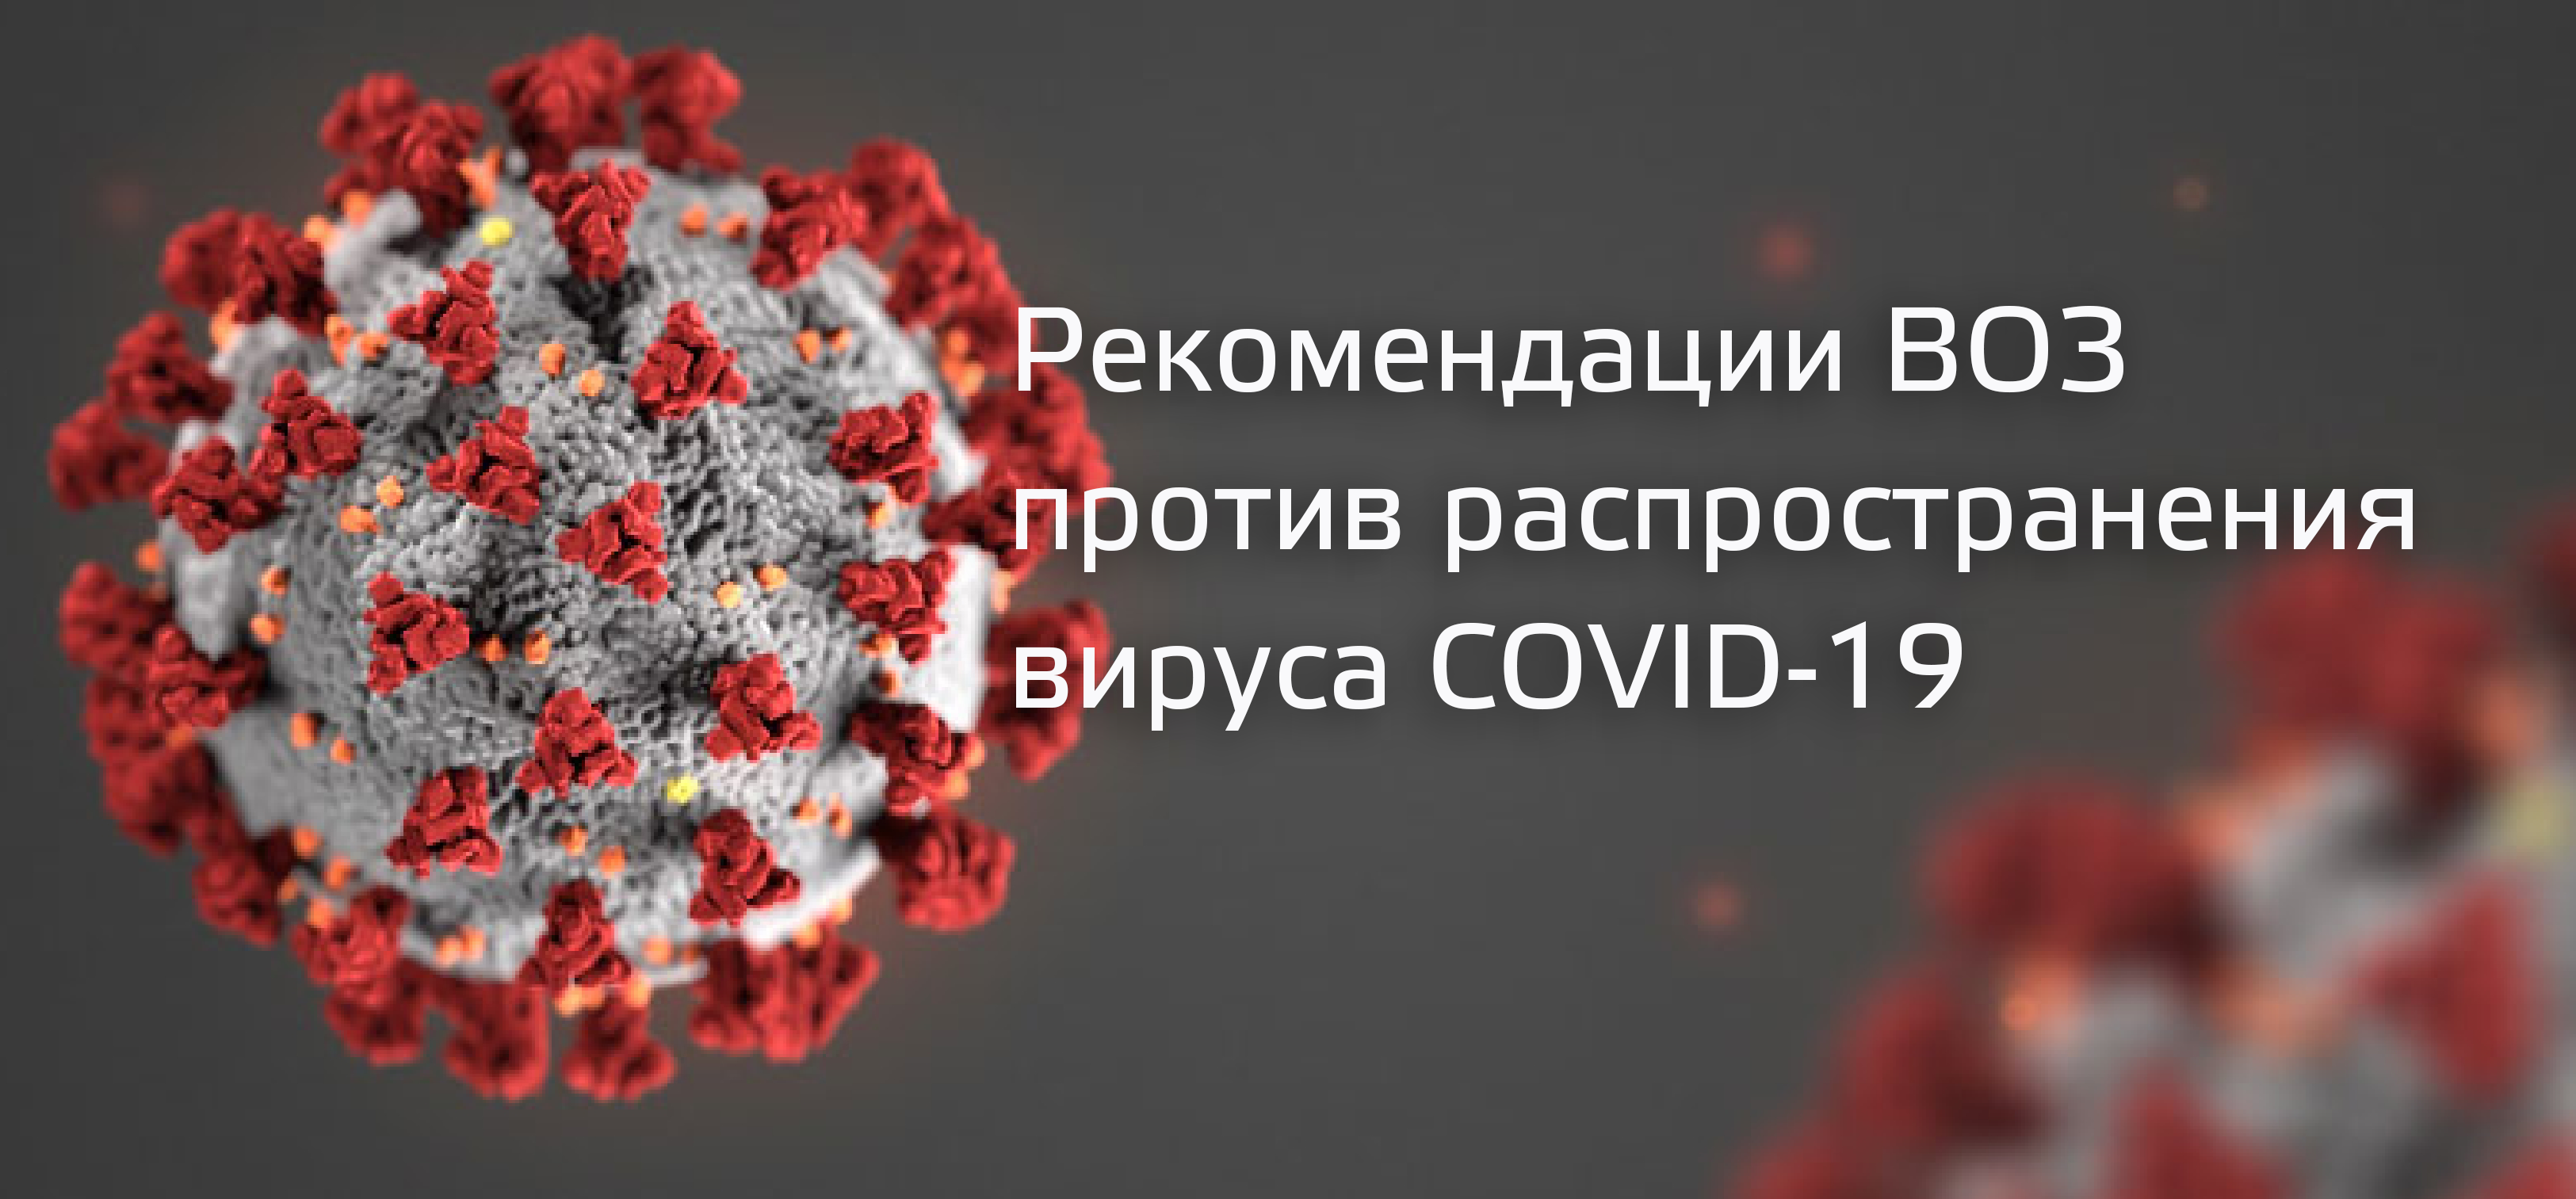 Рекомендации ВОЗ против распространения вируса COVID-19